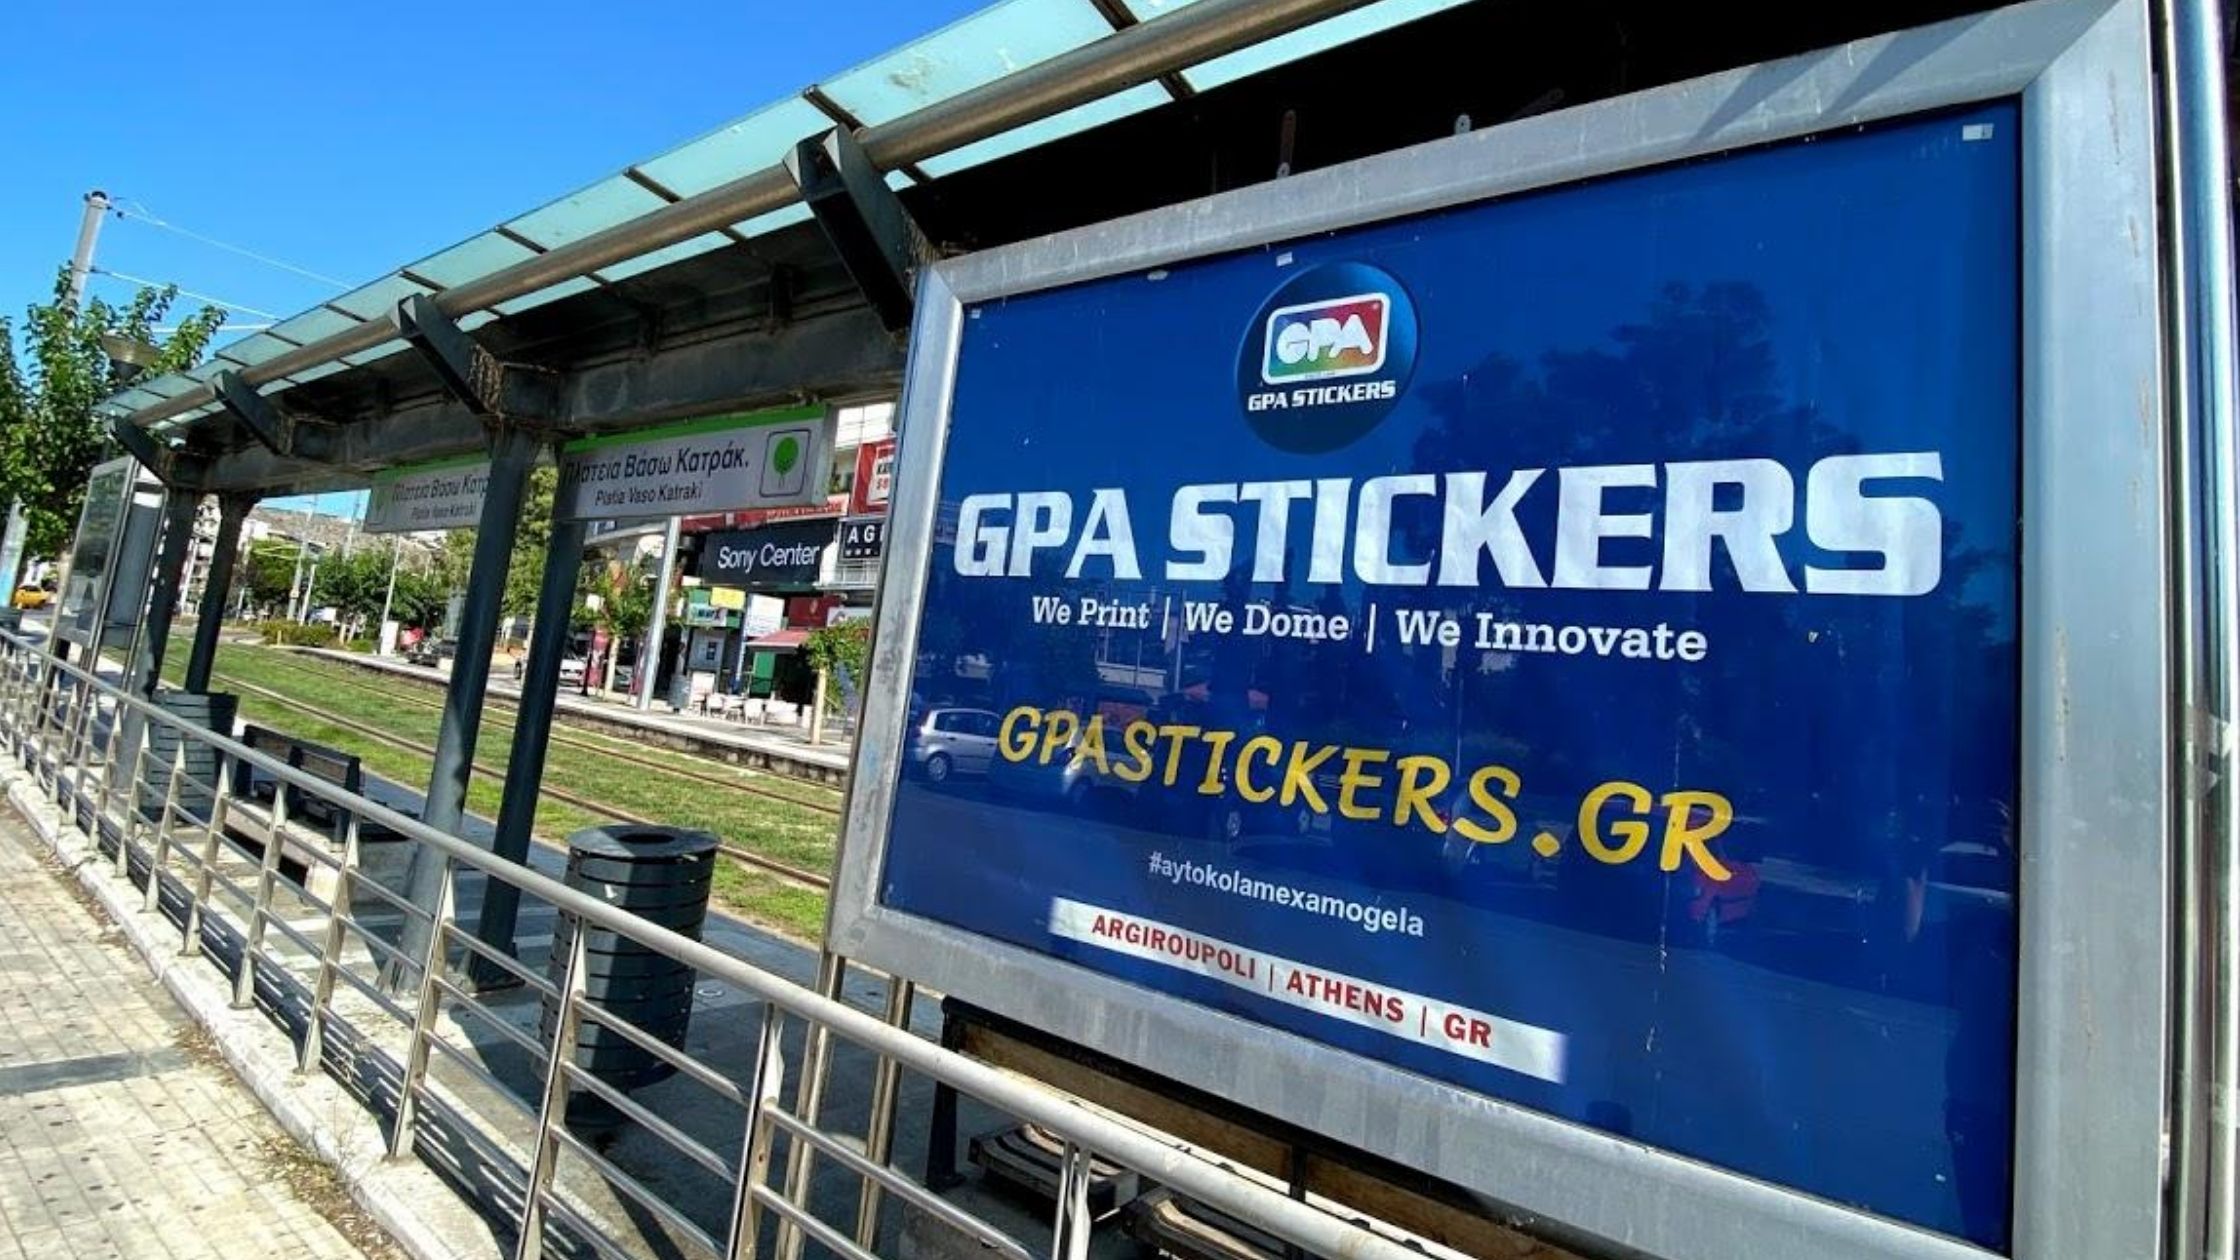 Tram offline project GPA STICKERS